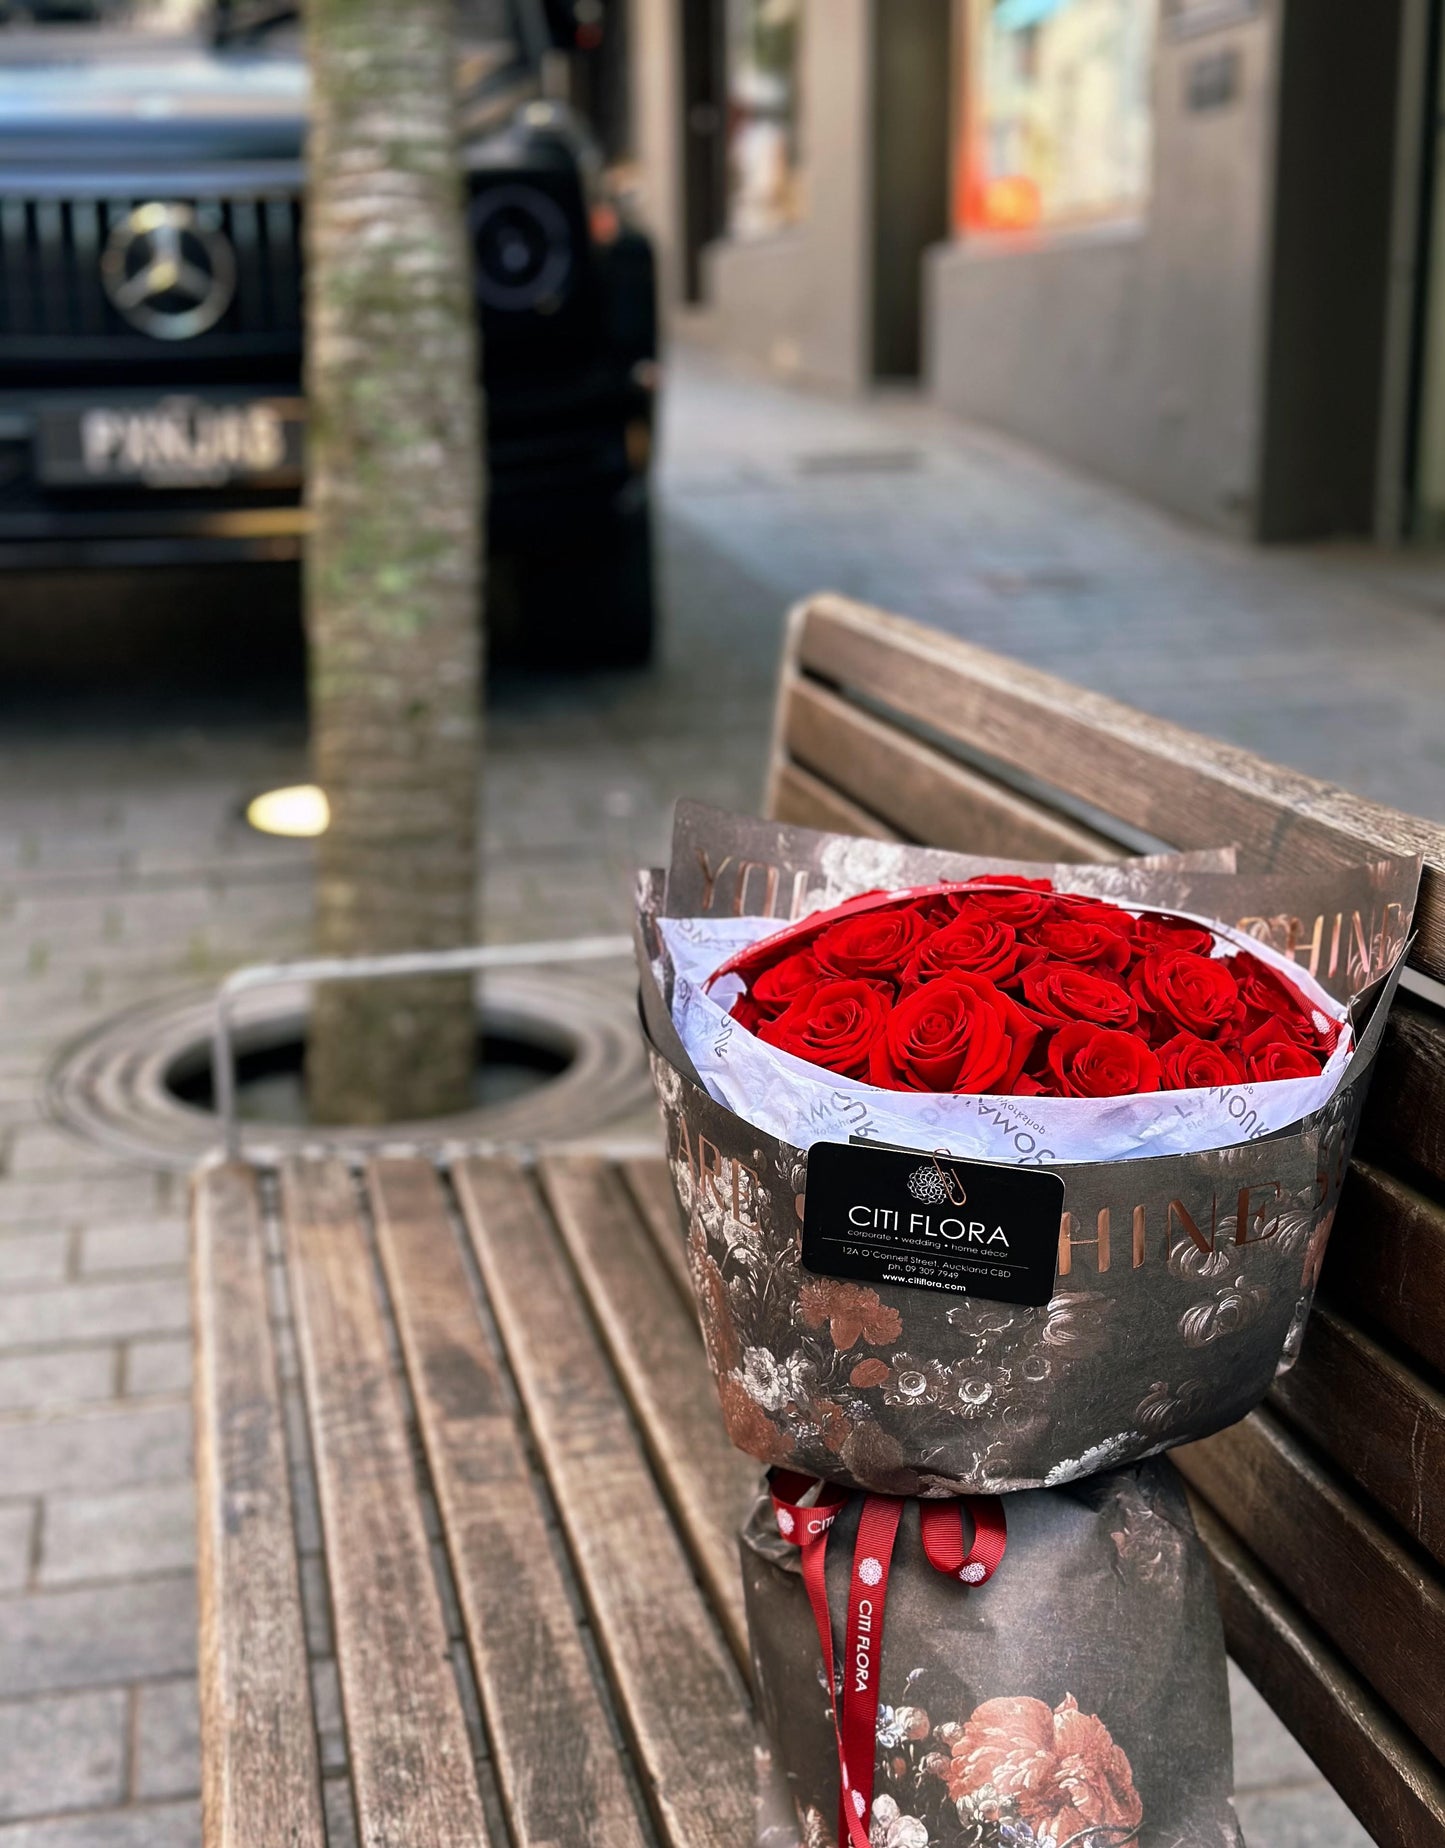 (AV1) Romantic Red Roses